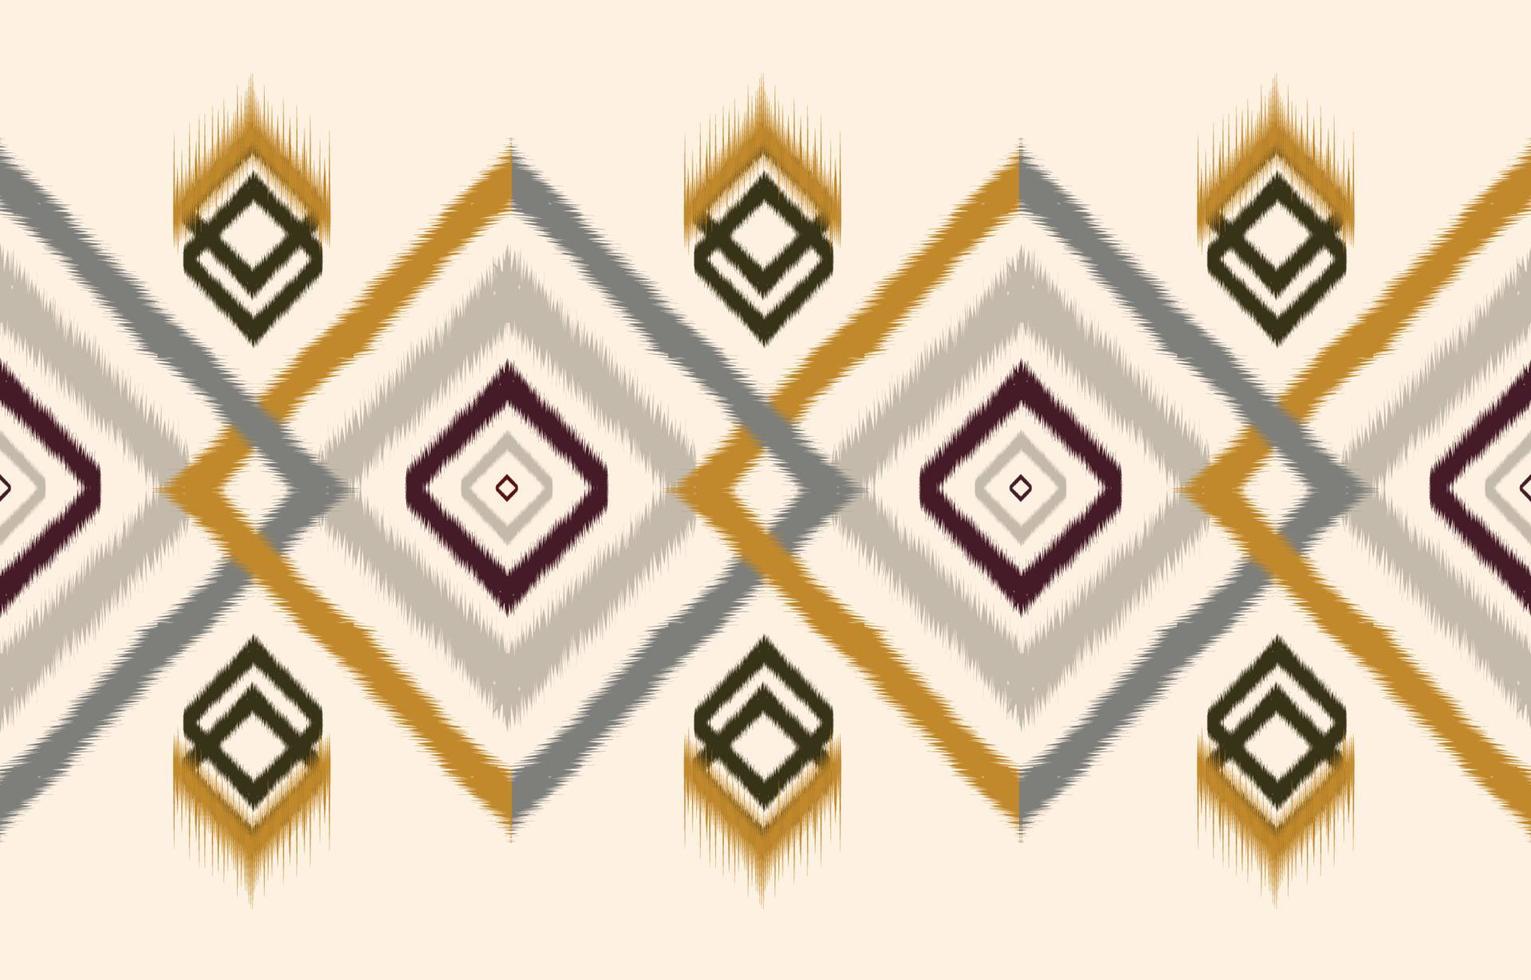 abstract etnisch meetkundig ikat patroon. oosters Afrikaanse Amerikaans Mexicaans aztec motief textiel en Boheems patroon vector elementen. ontworpen voor achtergrond, behang, afdrukken .vector ikat patroon.